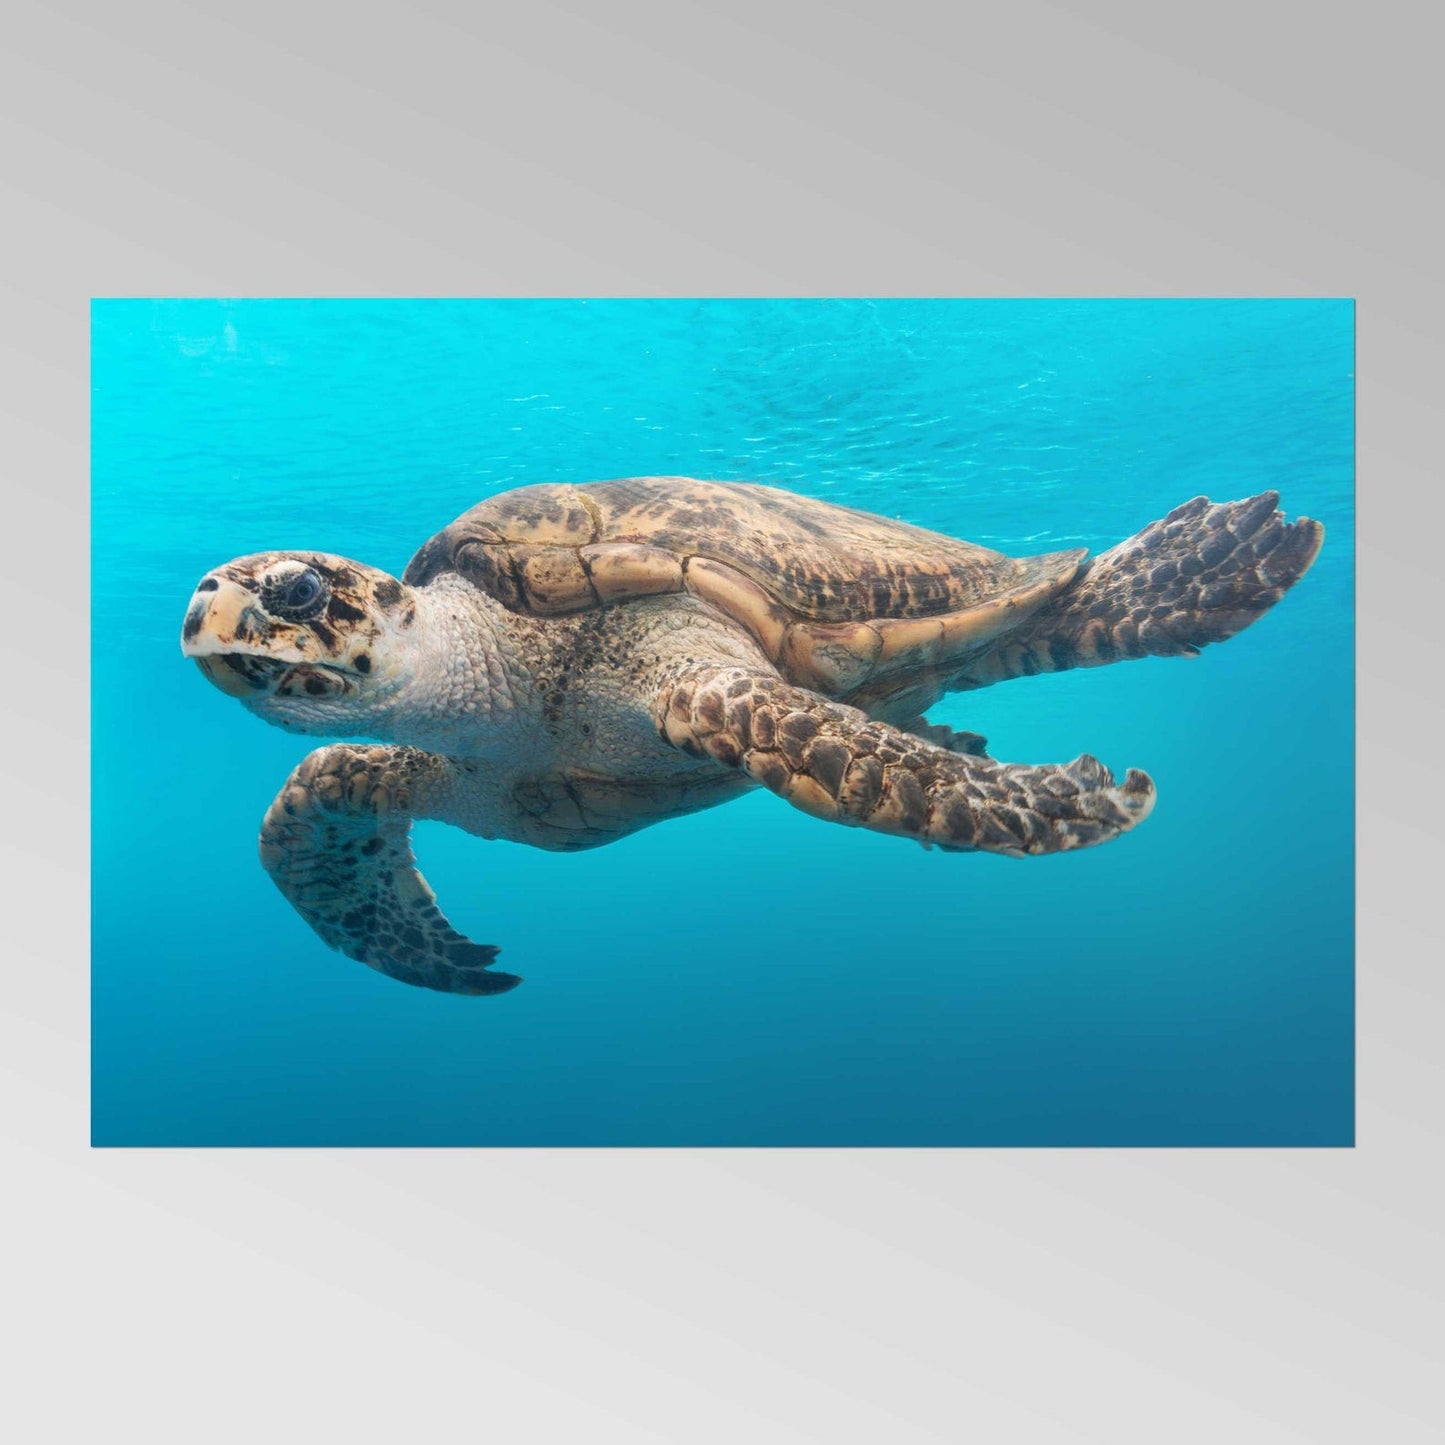 CAROL M. HIGHSMITH - Une tortue glisse dans l'eau